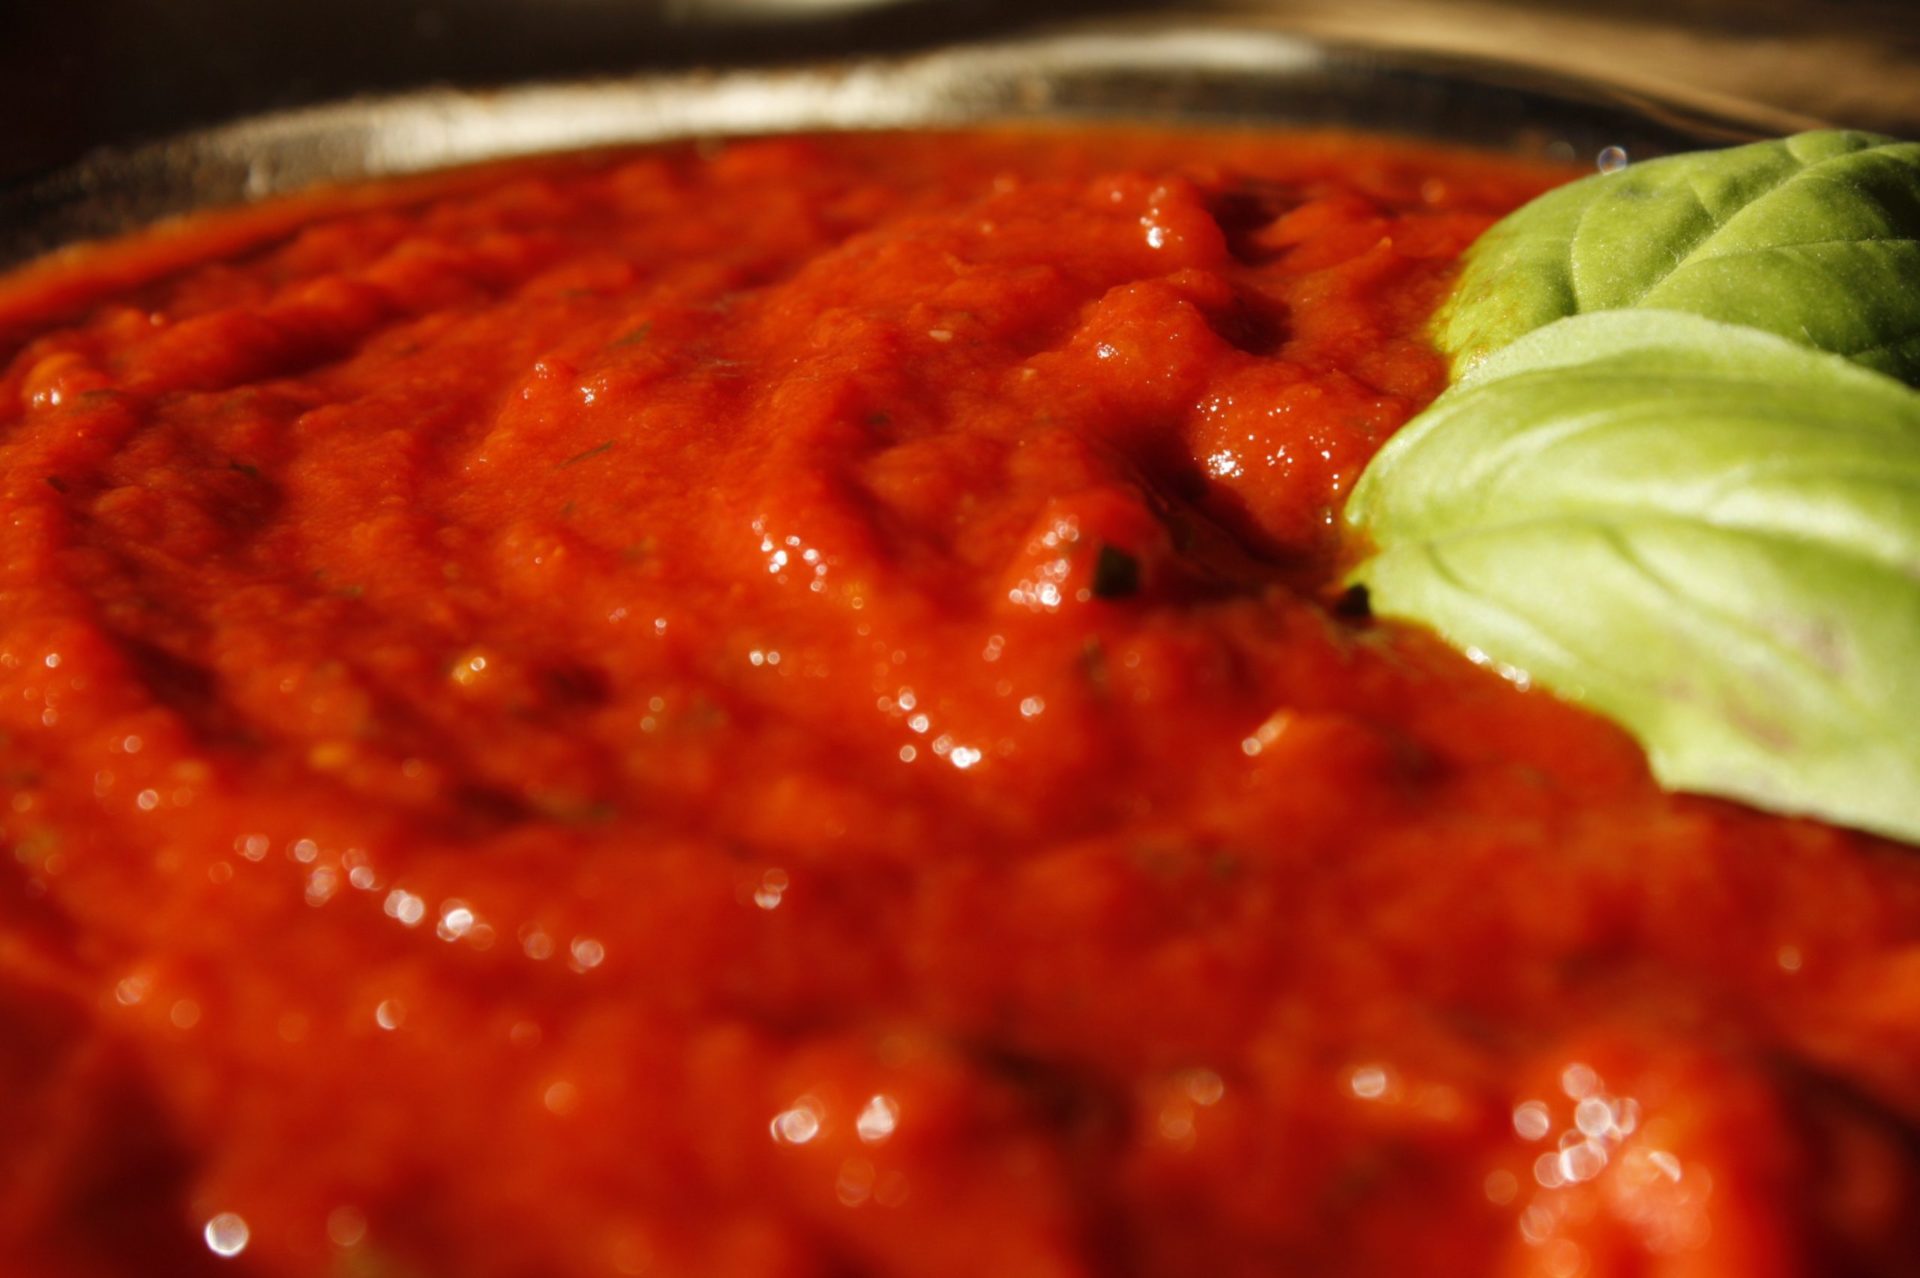 томатный соус из помидоров для пиццы в домашних условиях фото 47